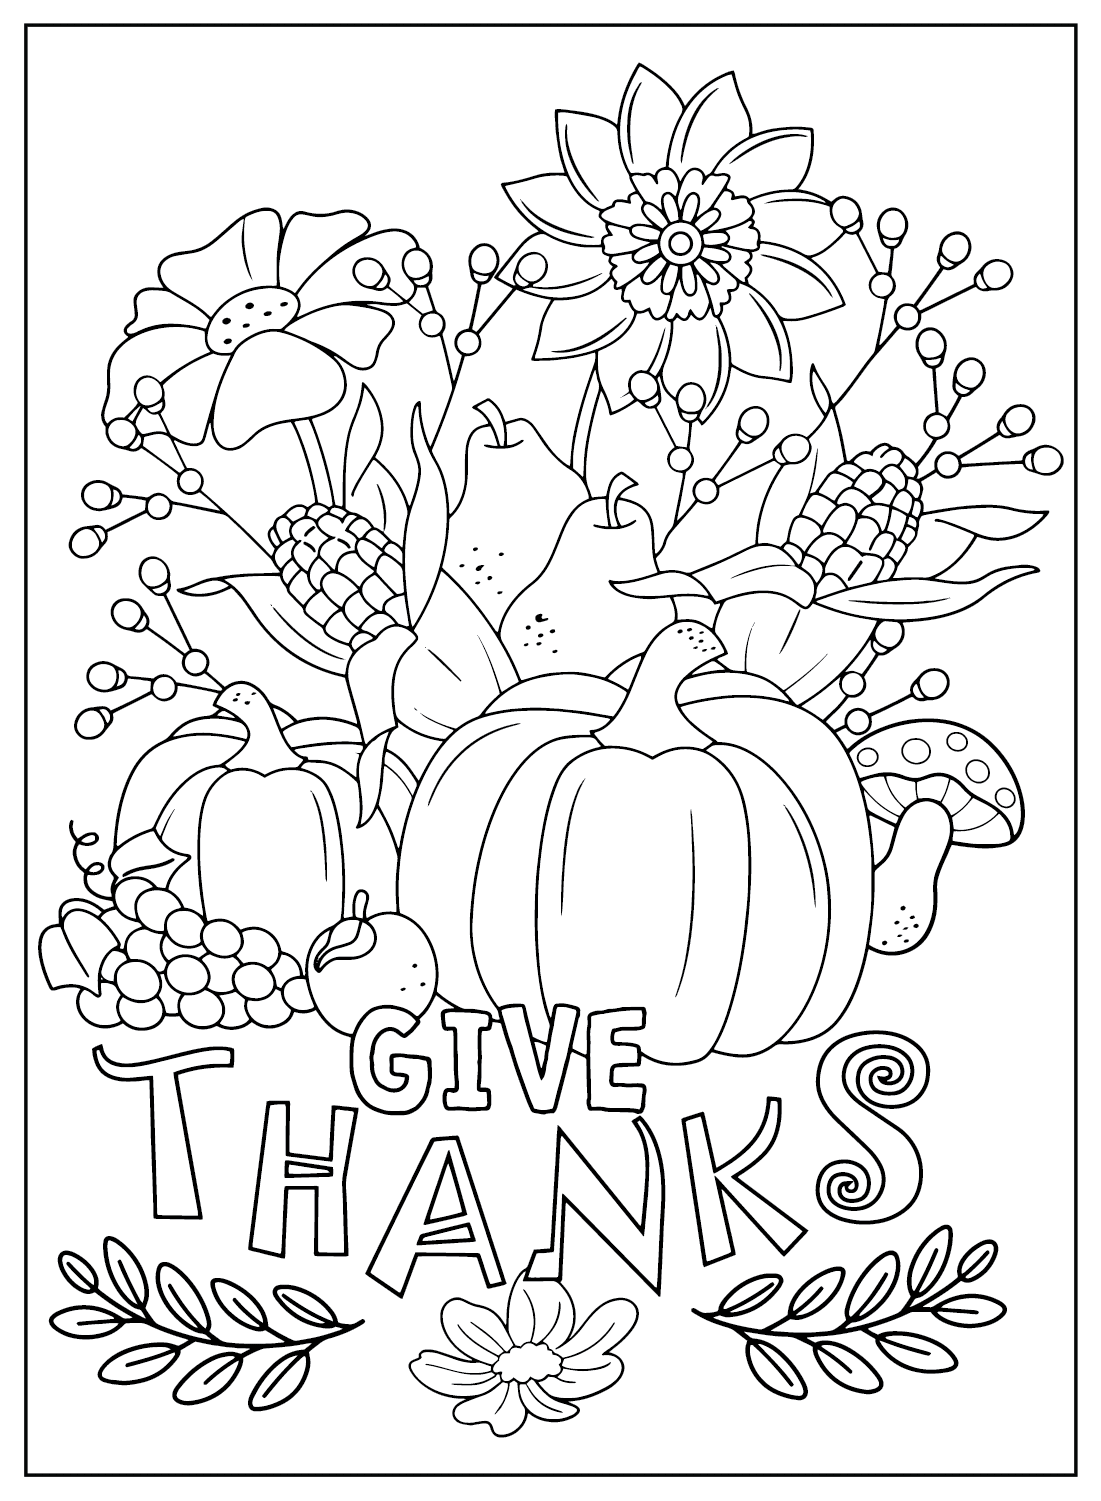 Página colorida de Ação de Graças do Dia de Ação de Graças